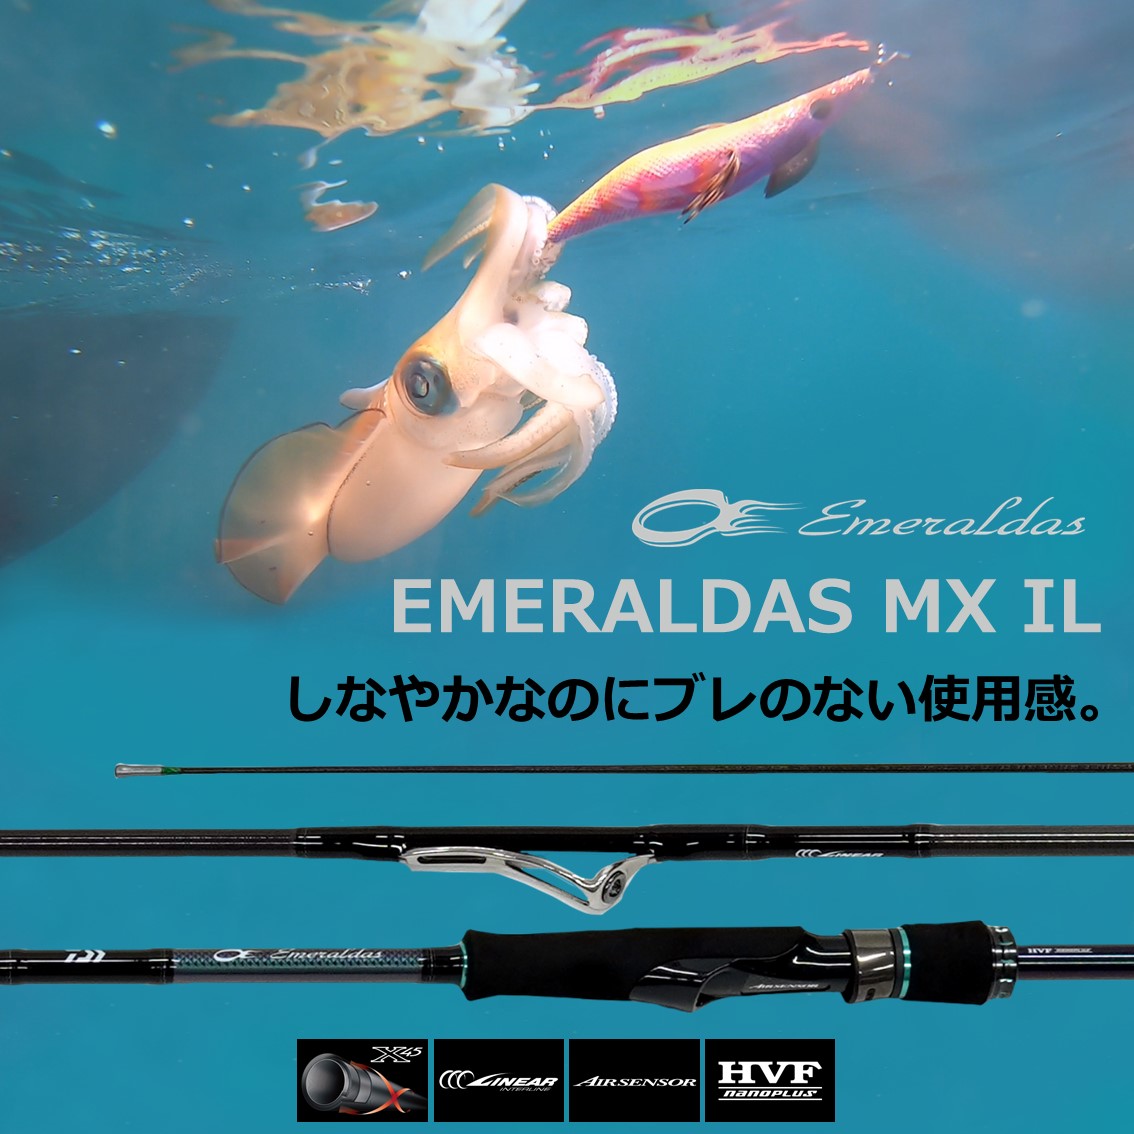 ダイワ 21 エメラルダスmx Il 86m N エギングロッド 釣り具の販売 通販なら フィッシング遊 Web本店 ダイワ シマノ がまかつの釣具ならおまかせ